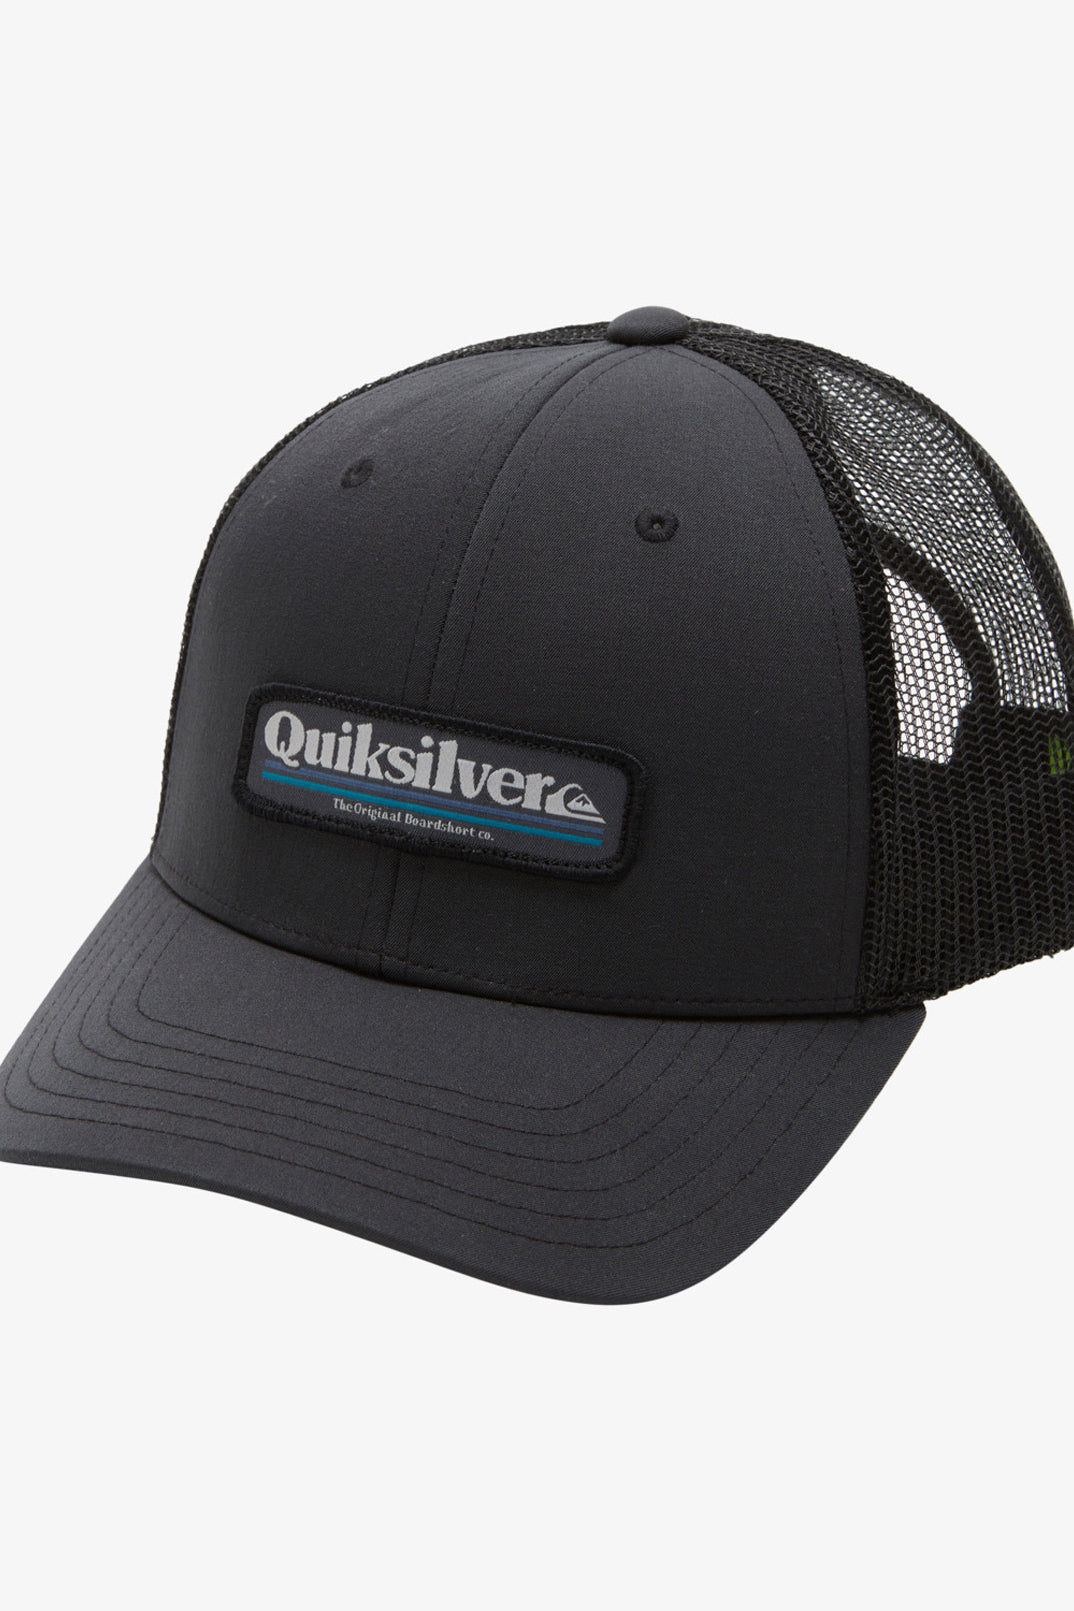 Quiksilver: Stern Catch Trucker Hat